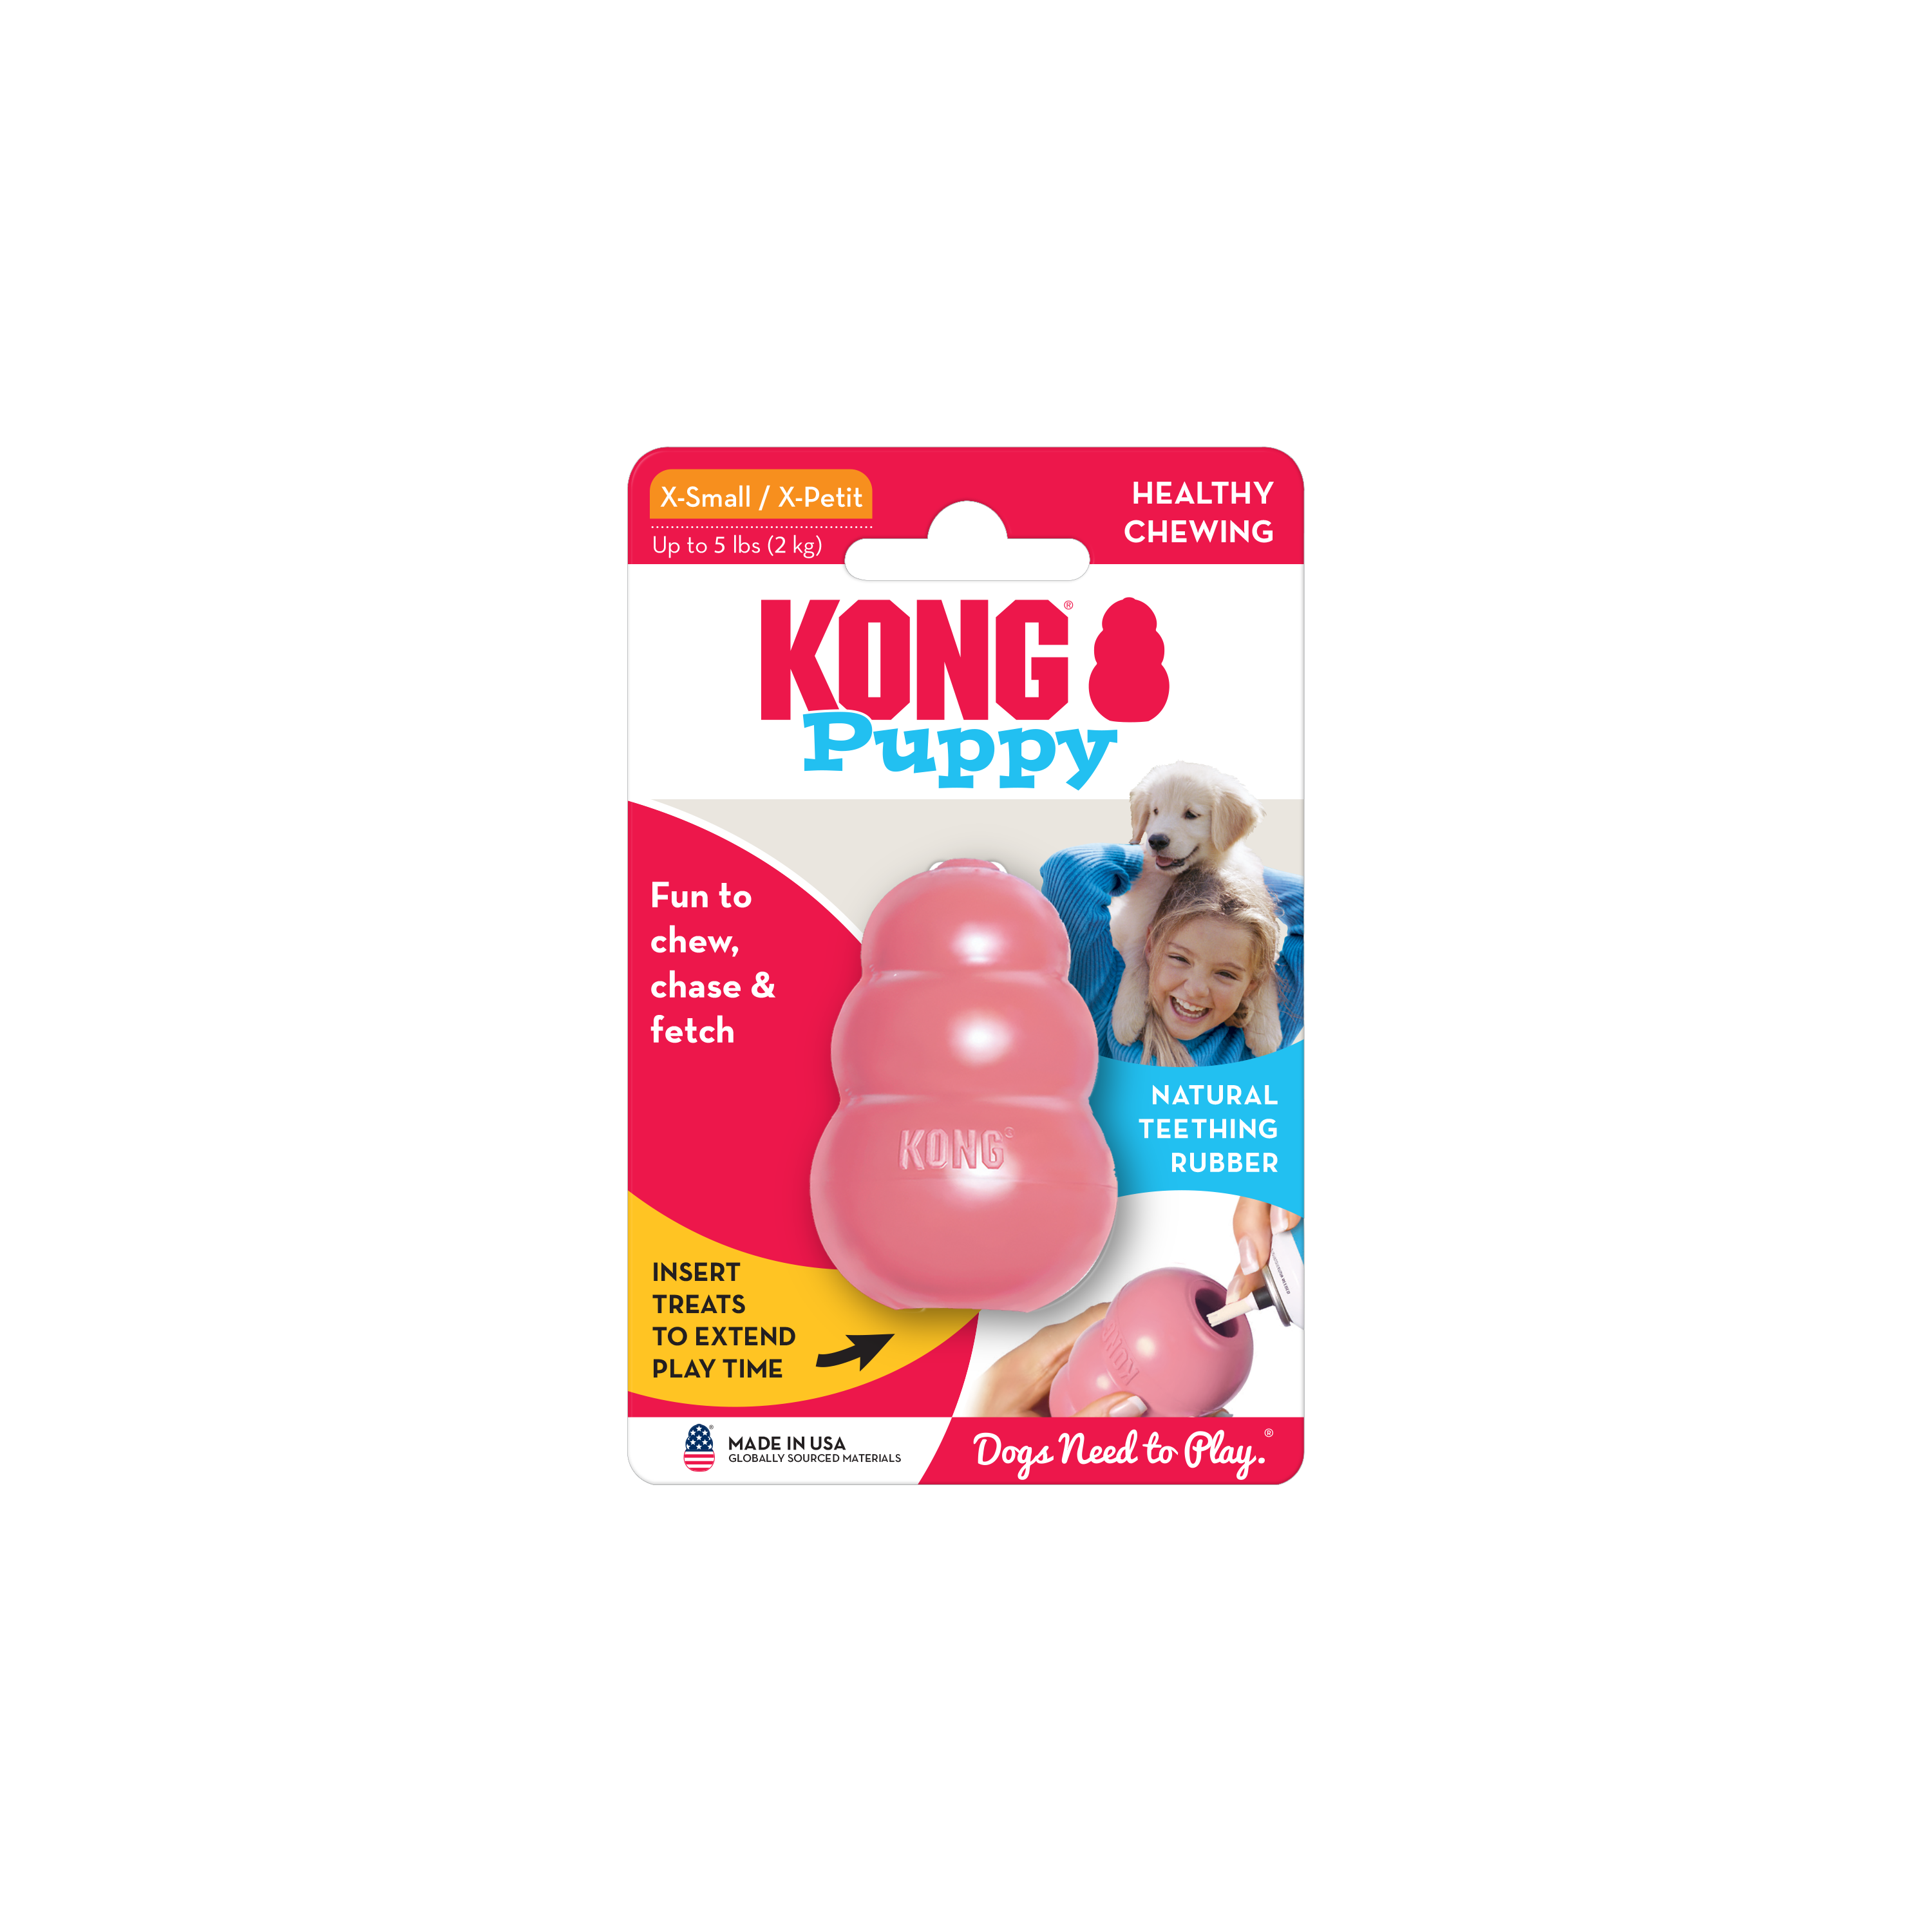 Imagem do produto KONG Puppy na embalagem